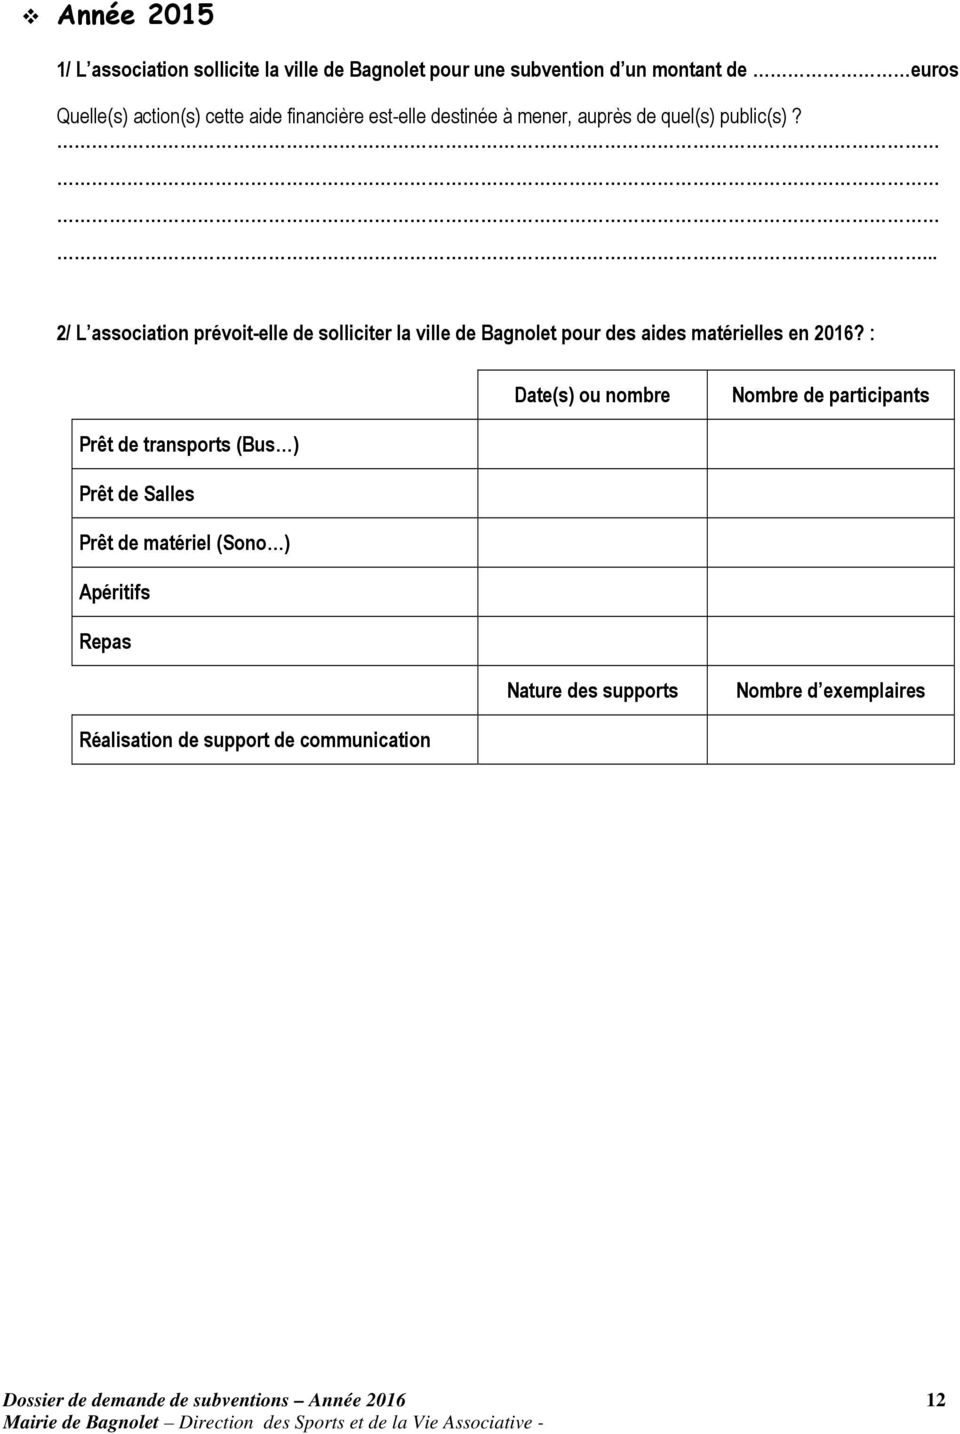 ... 2/ L association prévoit-elle de solliciter la ville de Bagnolet pour des aides matérielles en 2016?